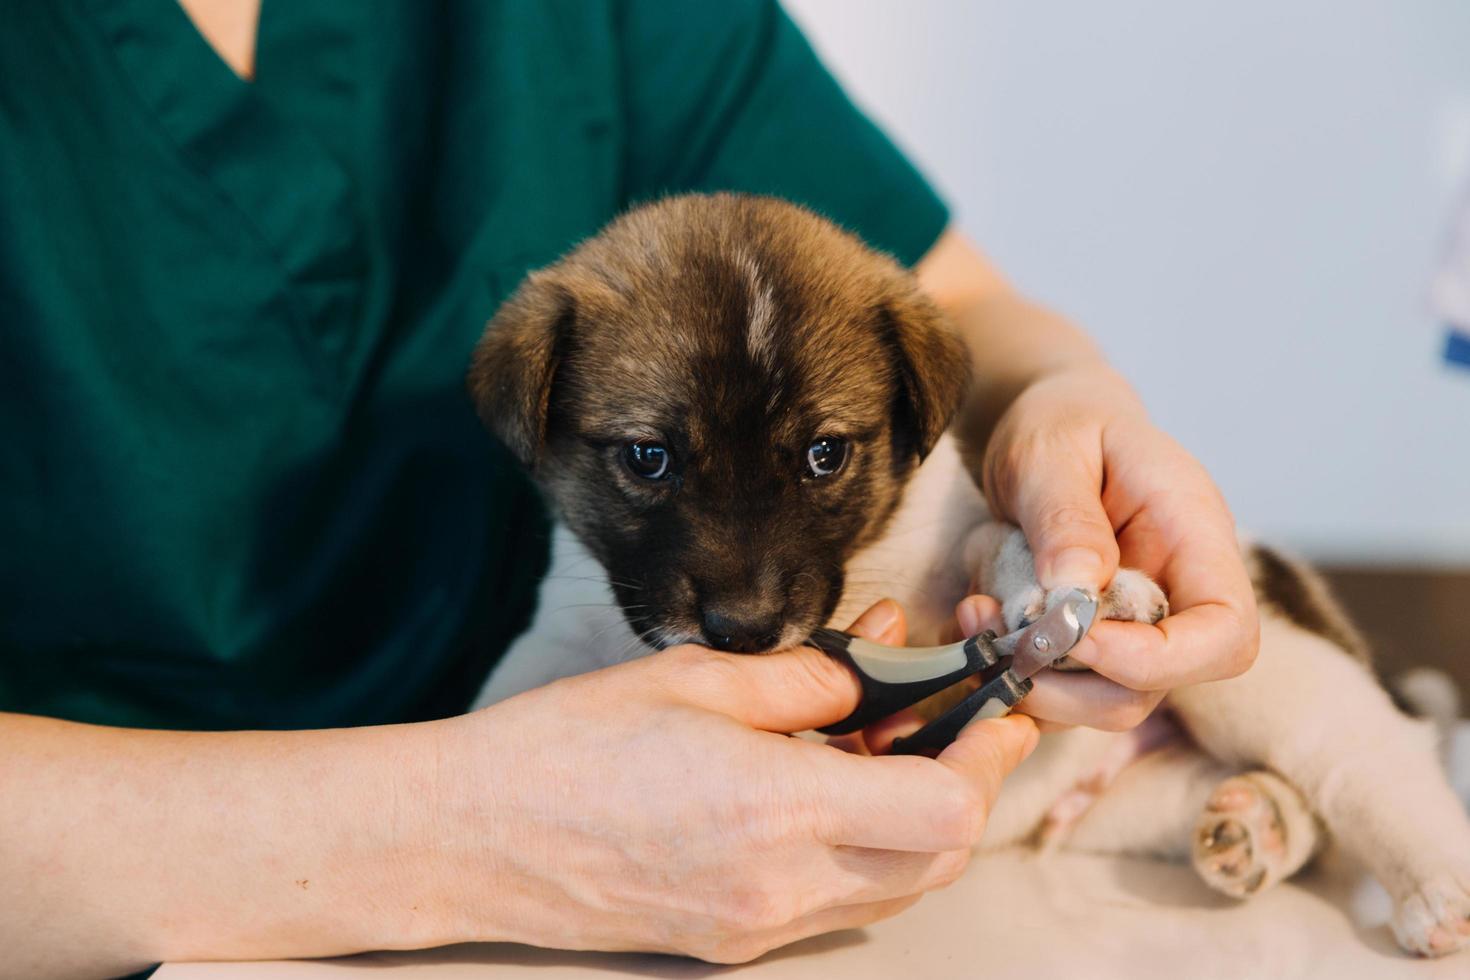 kontroll de andetag. manlig veterinär i arbete enhetlig lyssnande till de andetag av en små hund med en phonendoscope i veterinär klinik. sällskapsdjur vård begrepp foto